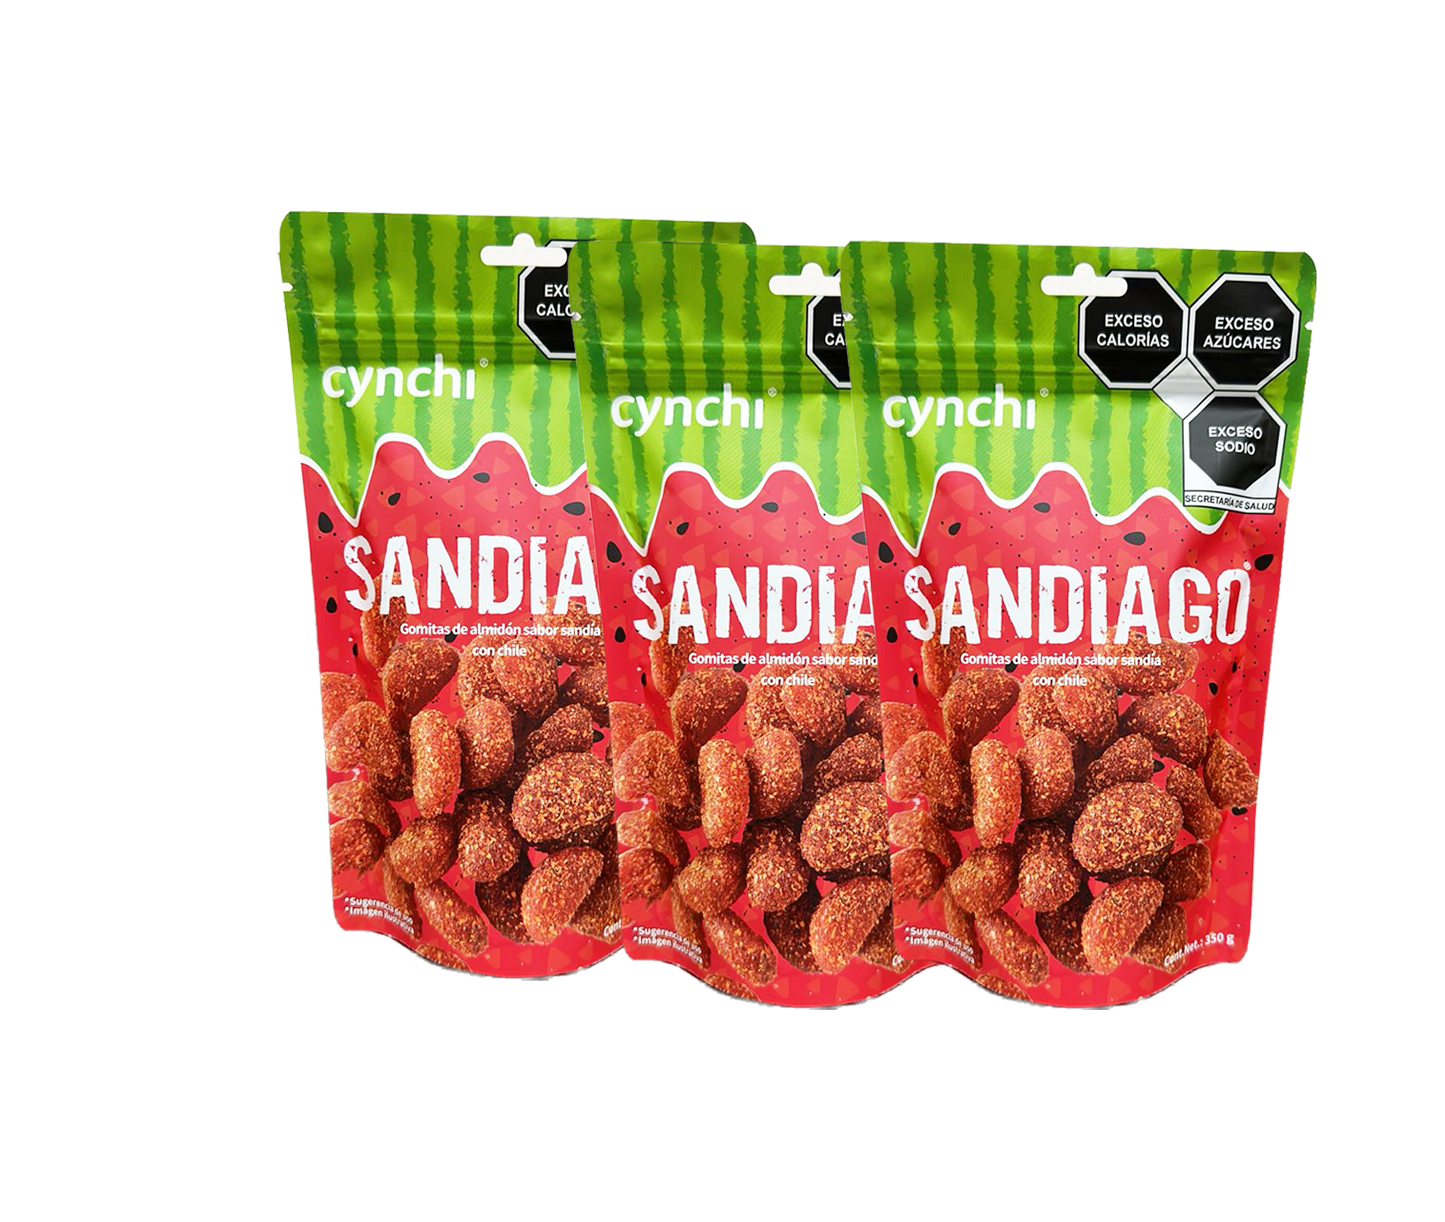 Sandiago 3 pack